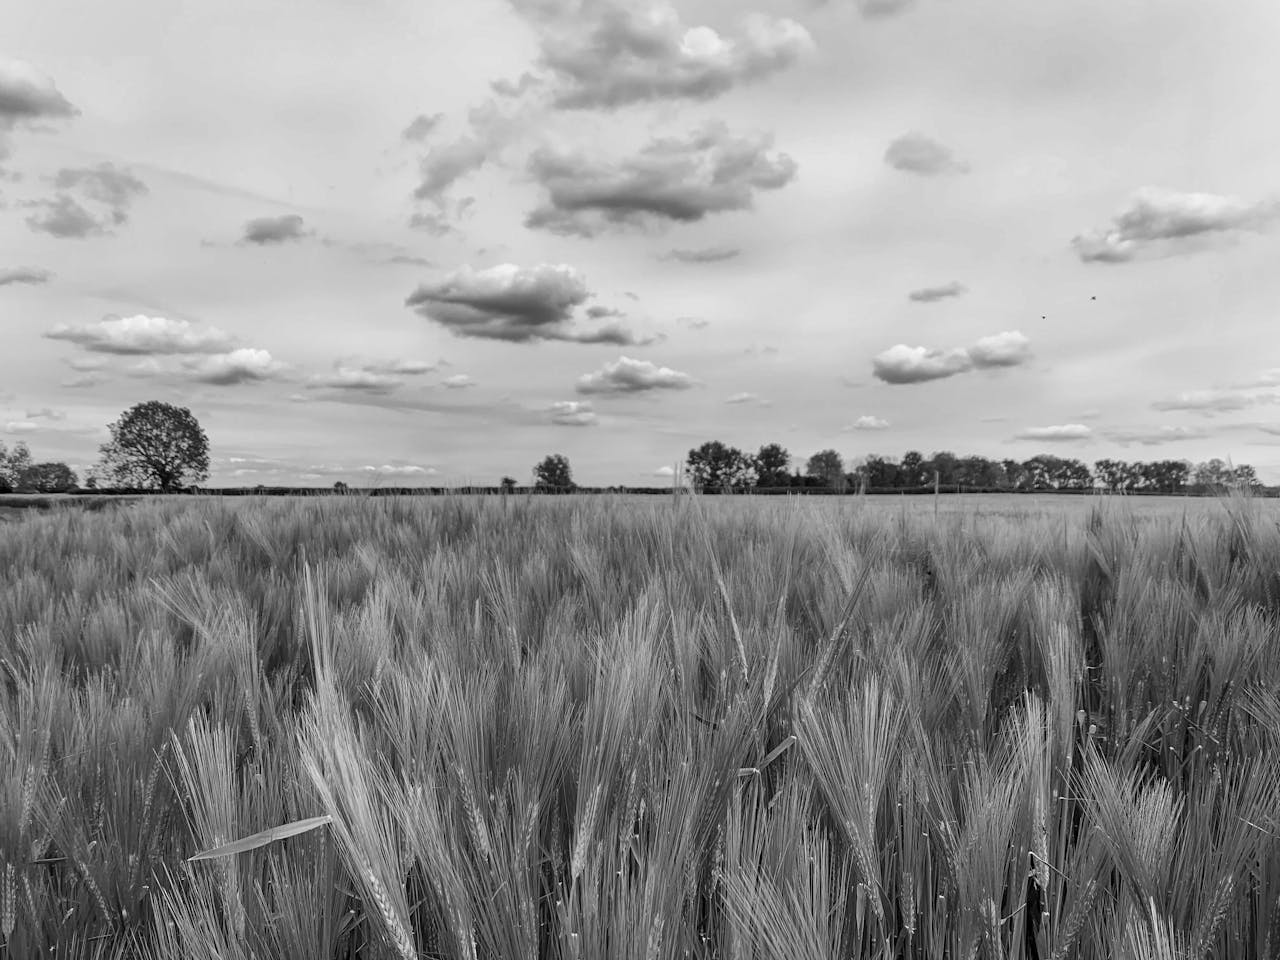 Barley field in Bicester, UK